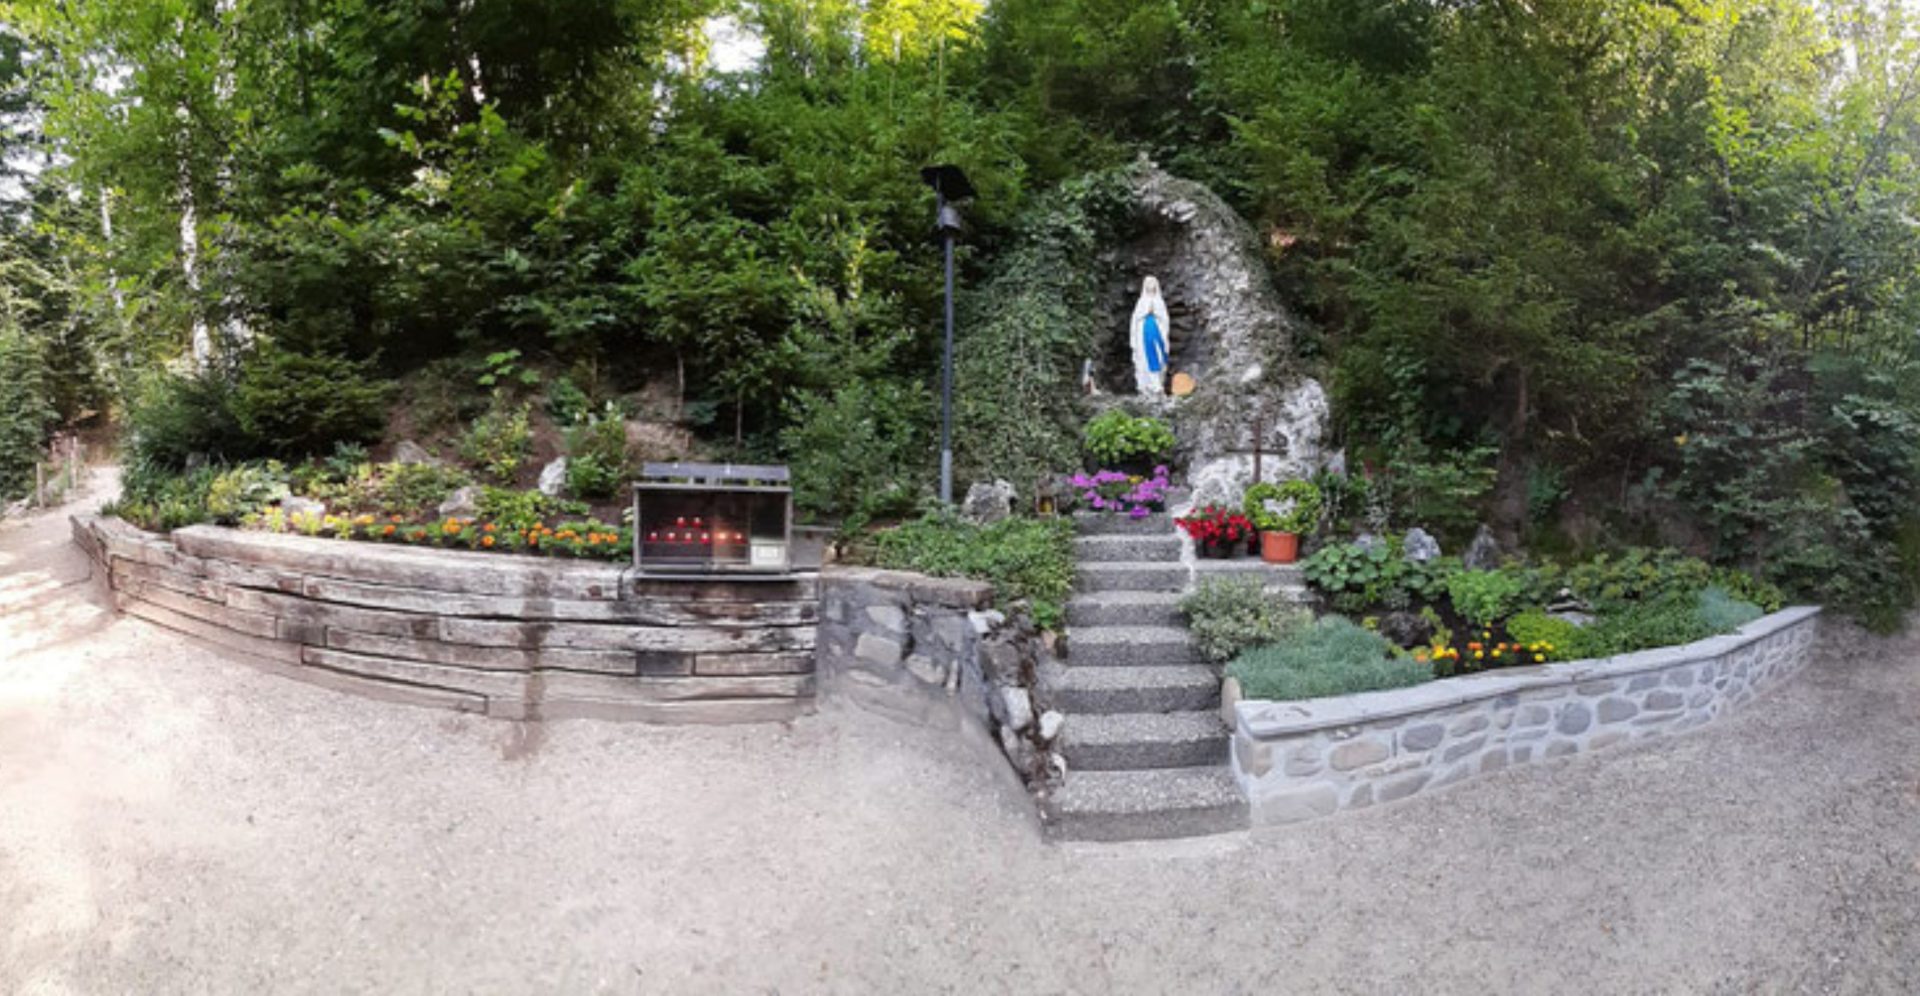 La grotte de Lourdes « Stersmühligrotte » – Giffers, Fribourg